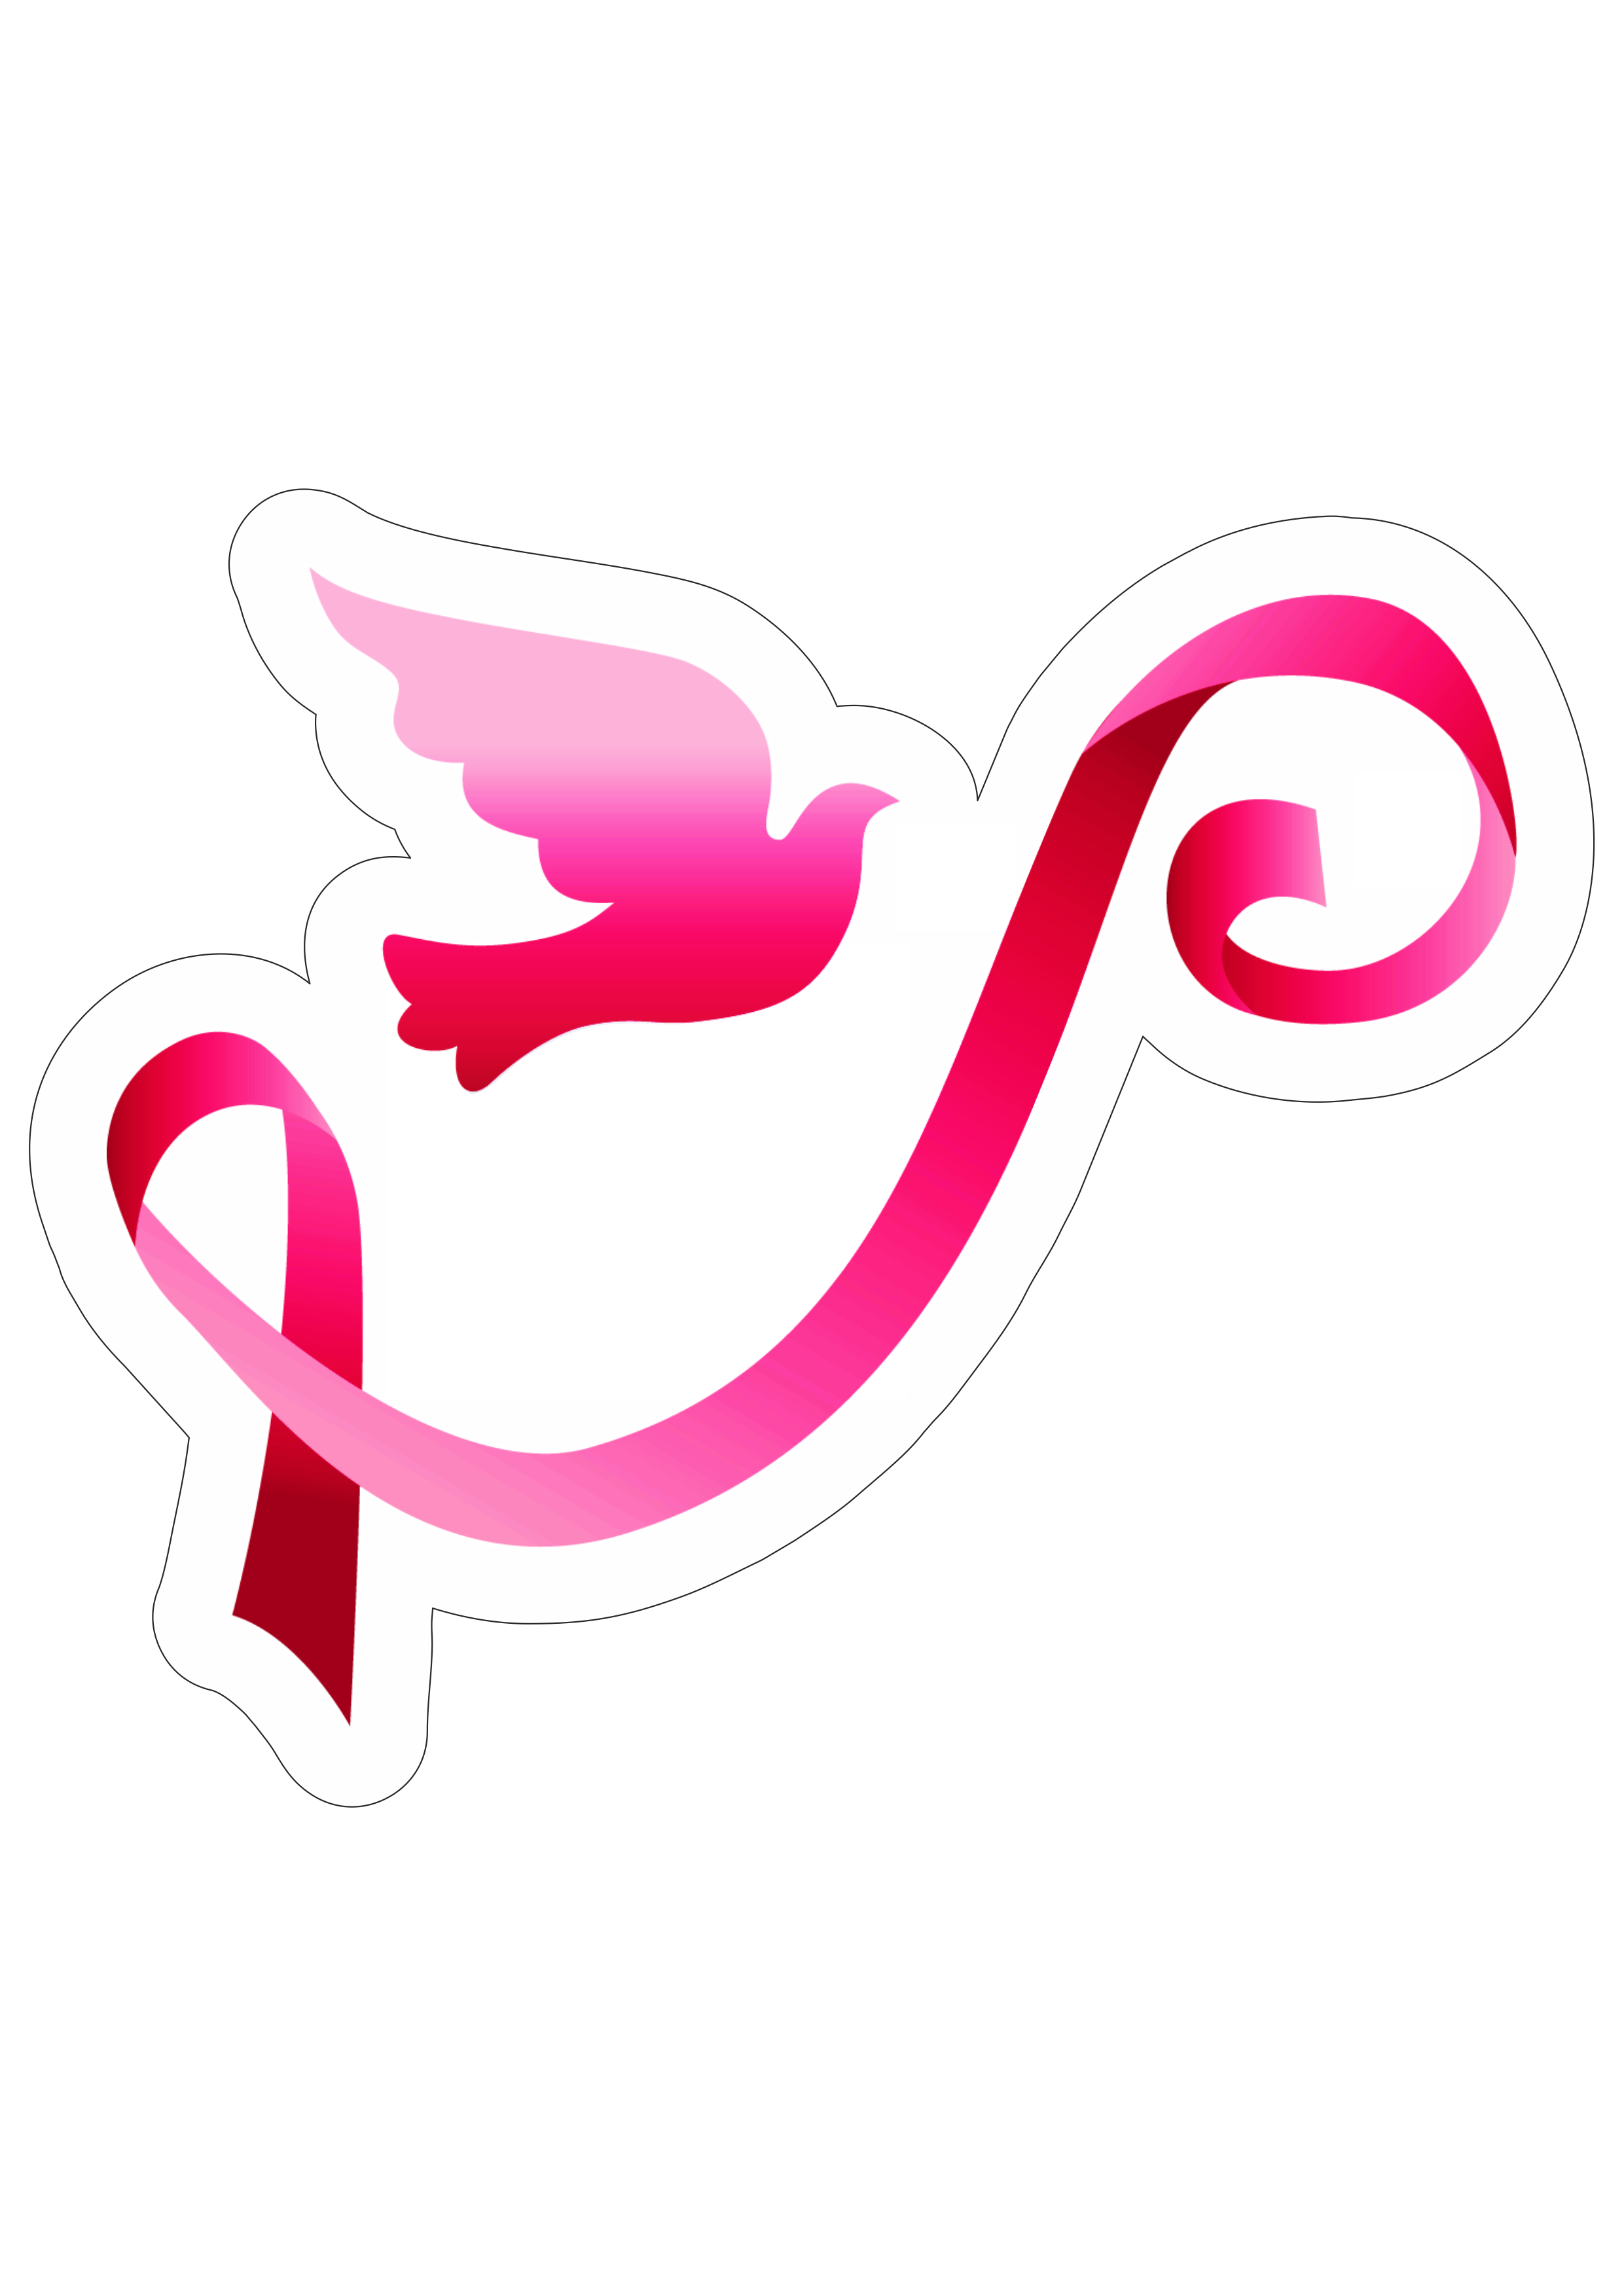 Outubro rosa mês de prevenção ao câncer de mama lacinho de fita campanha de conscientização design free png